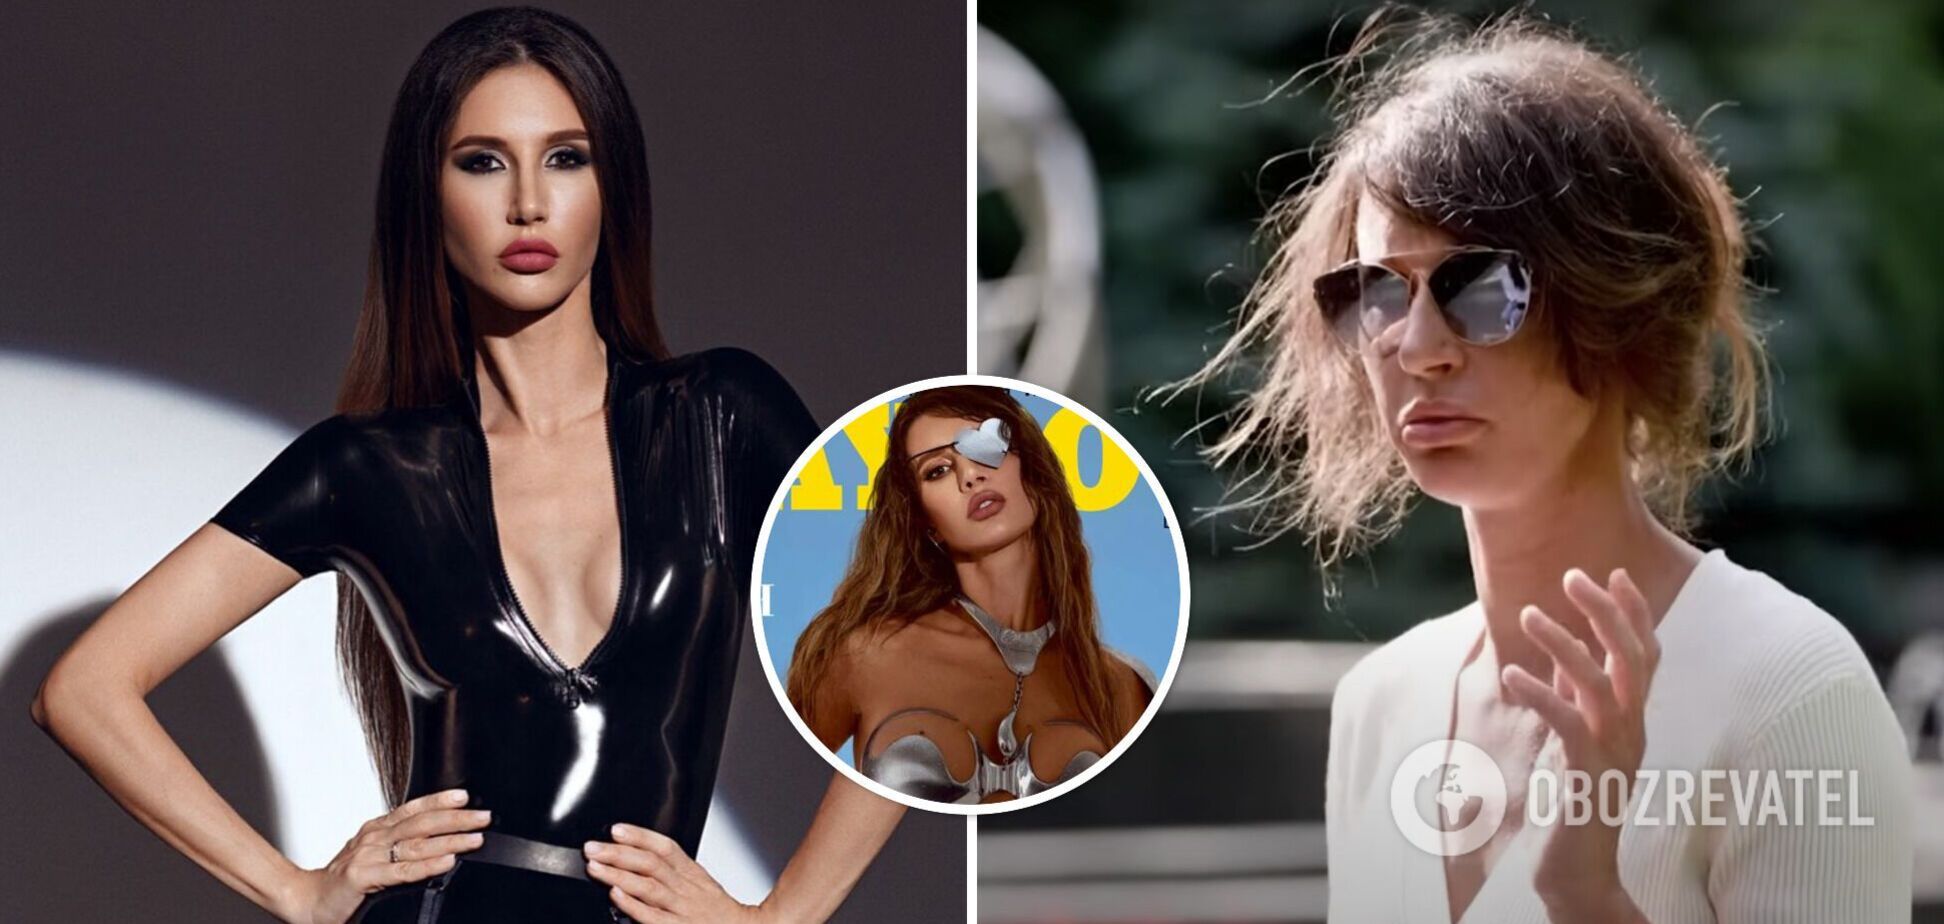 Где сейчас и как изменилась украинская модель Playboy Инна Белоцерковец, потерявшая глаз из-за России. Фото и видео